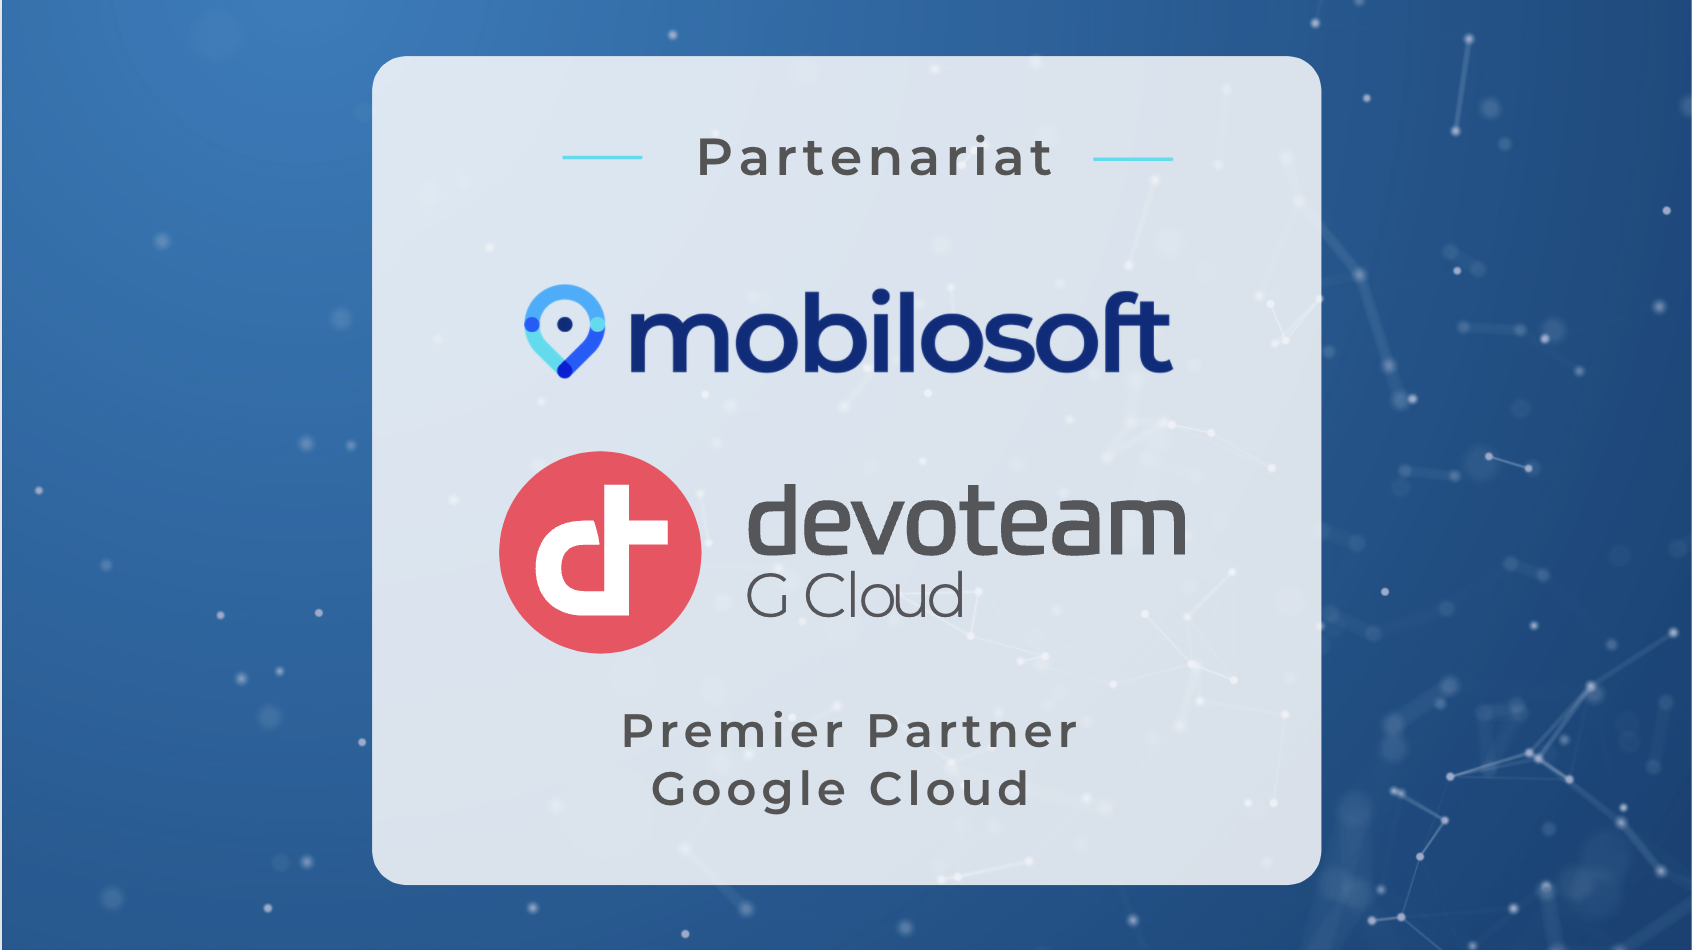 Partenariat Devoteam G Cloud France & Mobilosoft